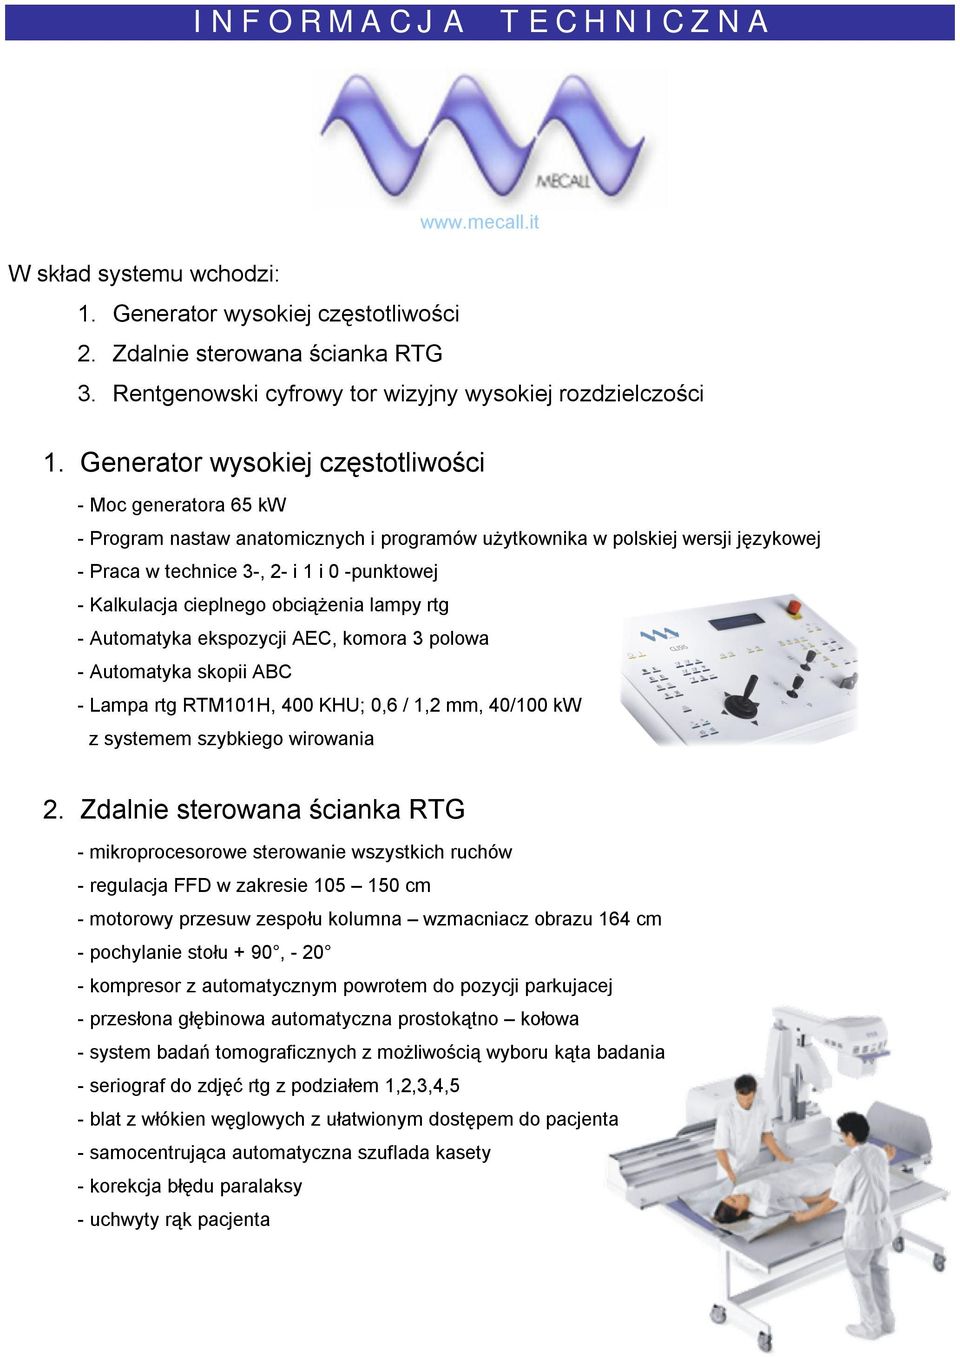 Generator wysokiej częstotliwości - Moc generatora 65 kw - Program nastaw anatomicznych i programów użytkownika w polskiej wersji językowej - Praca w technice 3-, 2- i 1 i 0 -punktowej - Kalkulacja